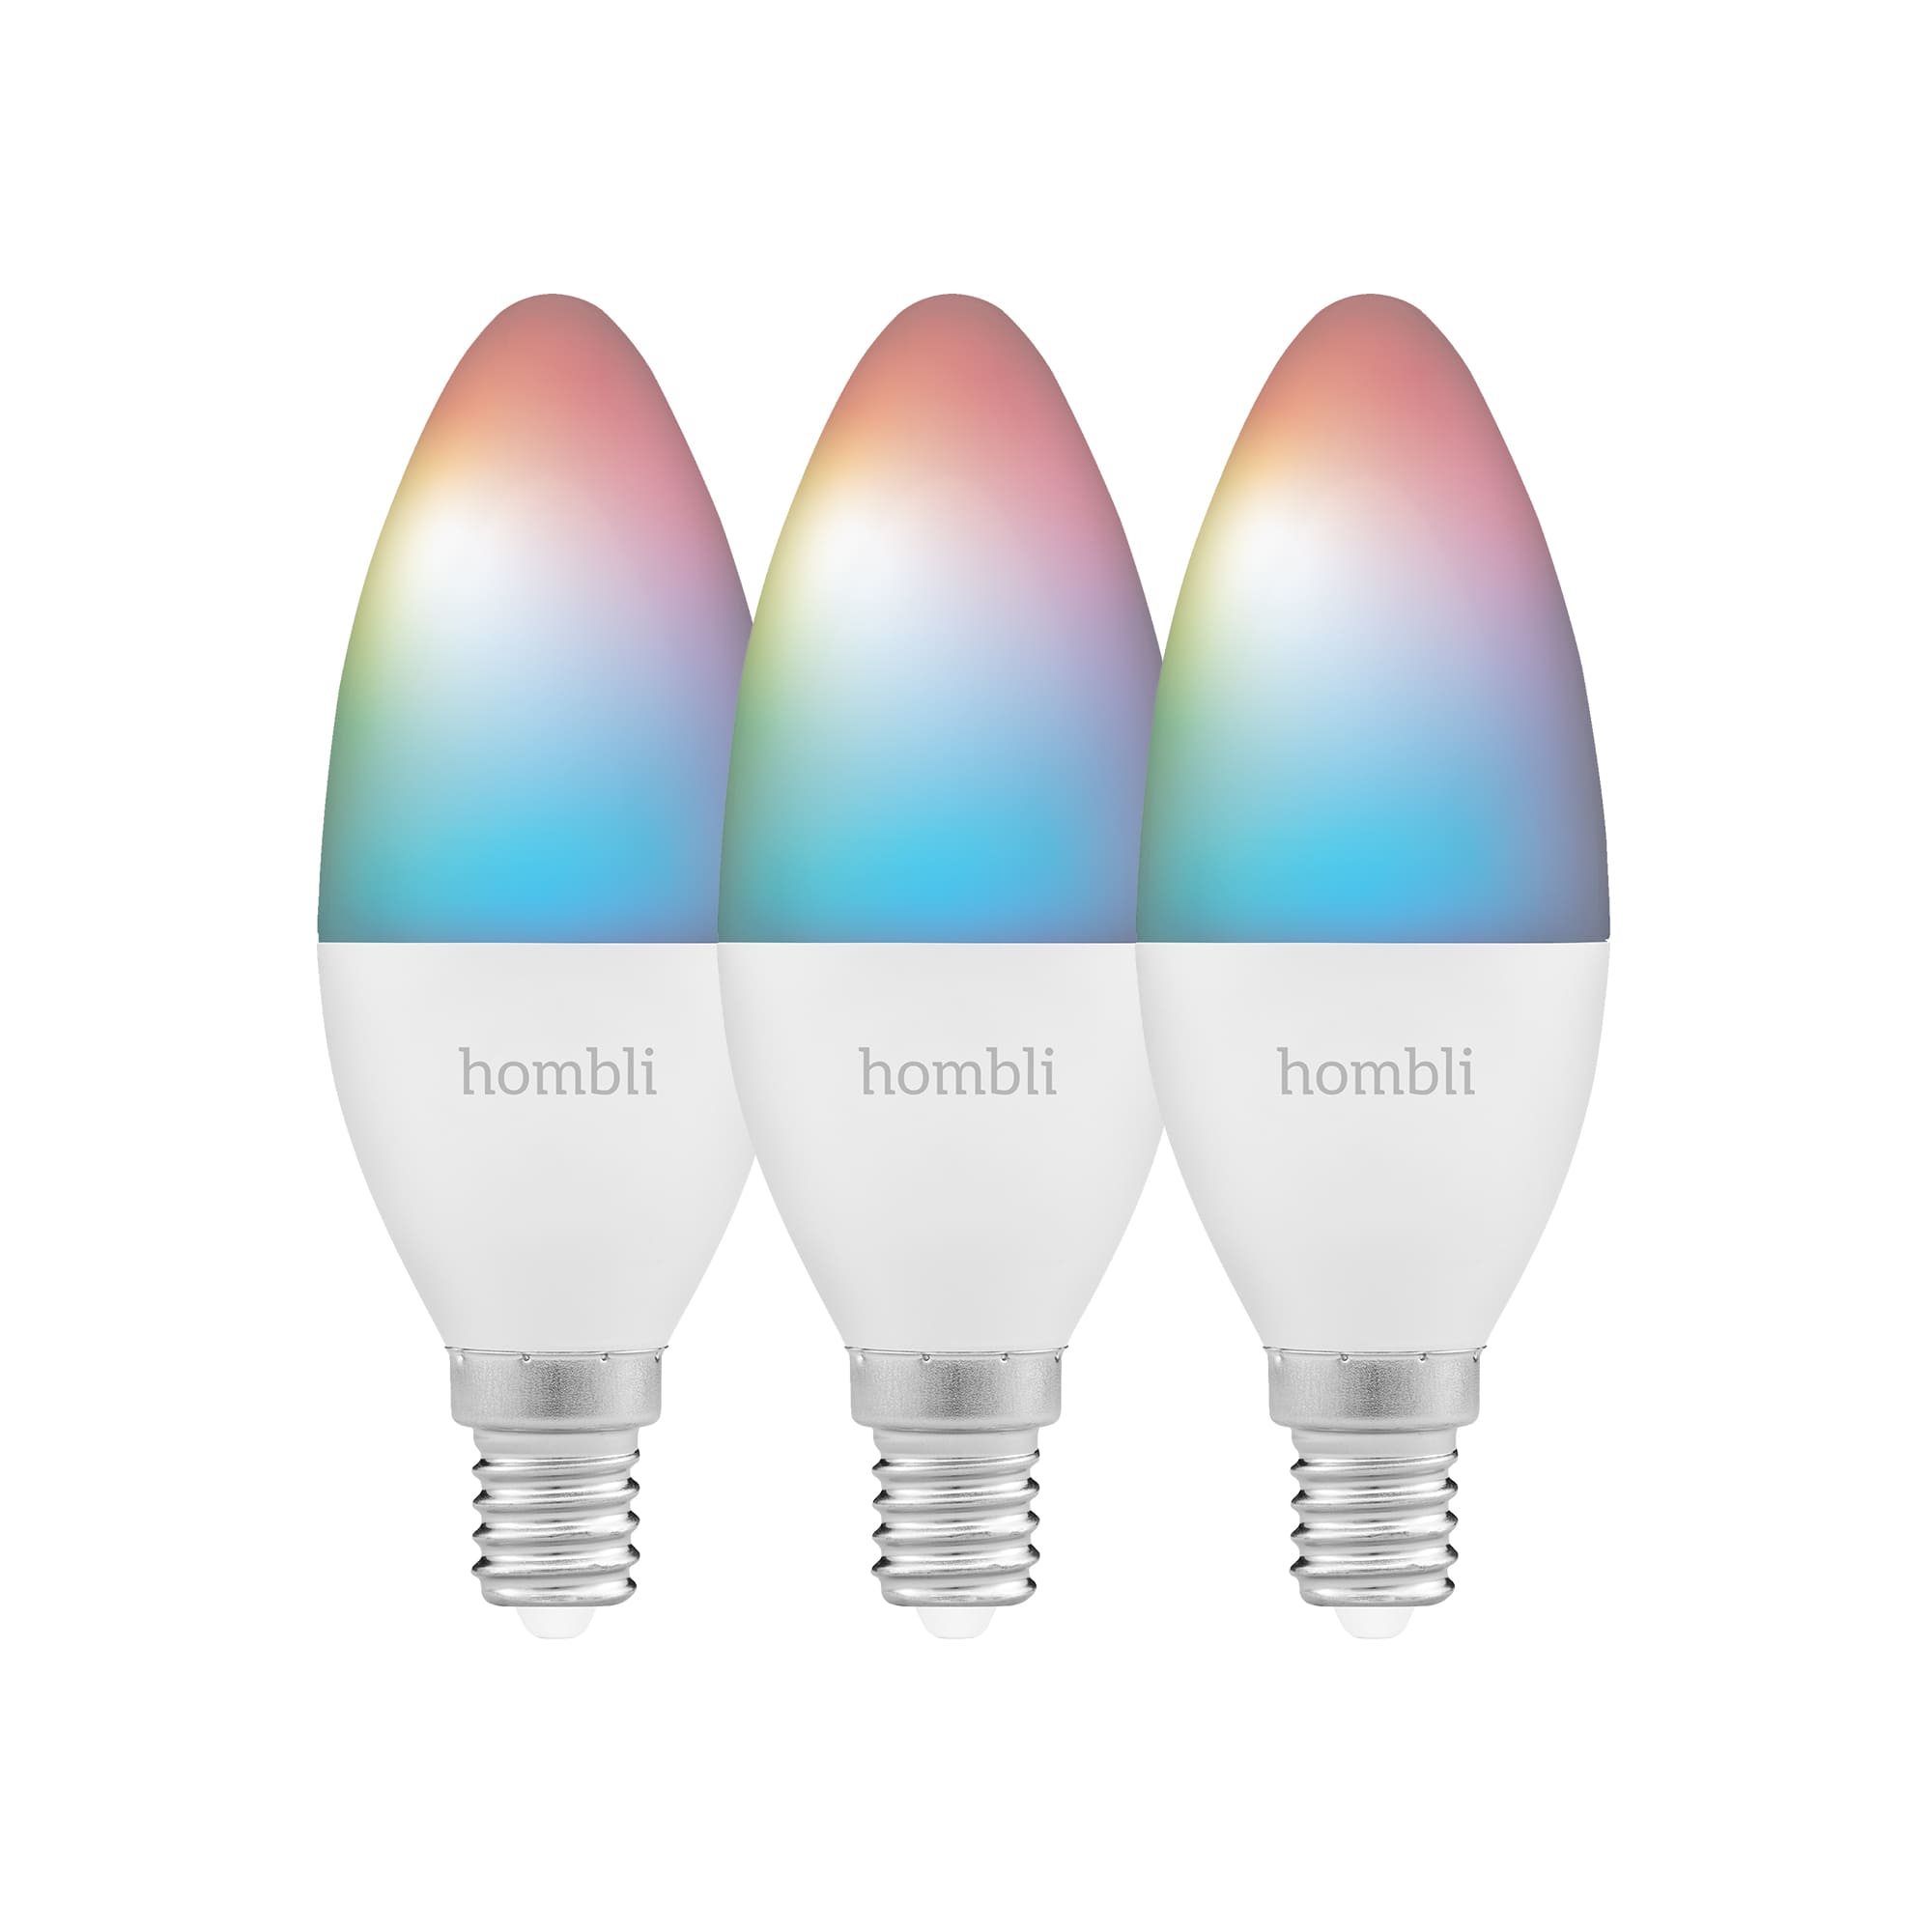 Uitgestorven Reciteren Behoefte aan Hombli Slimme RGBW Lamp E14 WiFi 3 pack kopen? | We ❤️ Smart! | ROBBshop